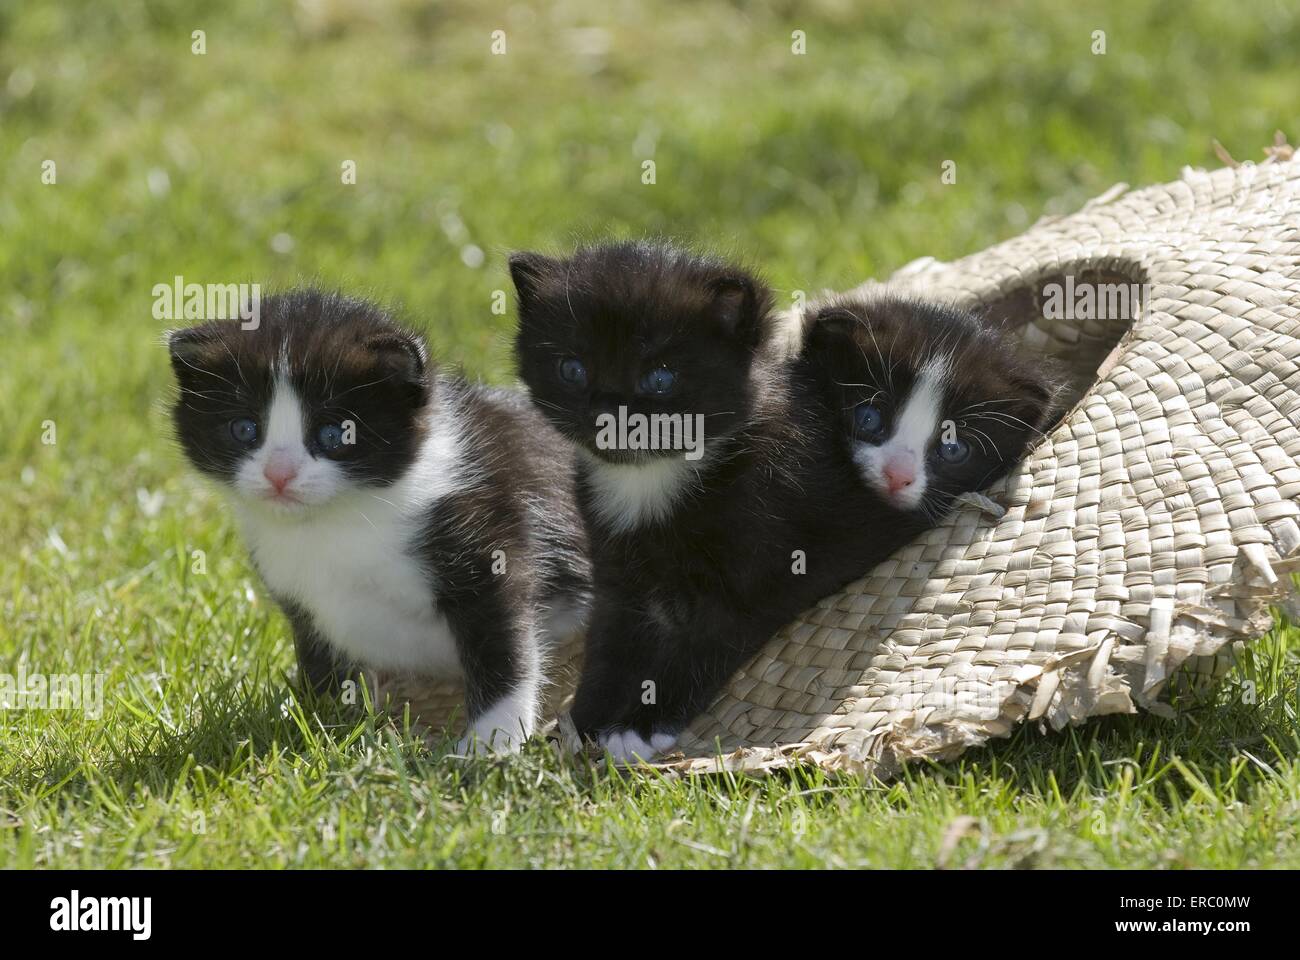 kitten in garden Stock Photo